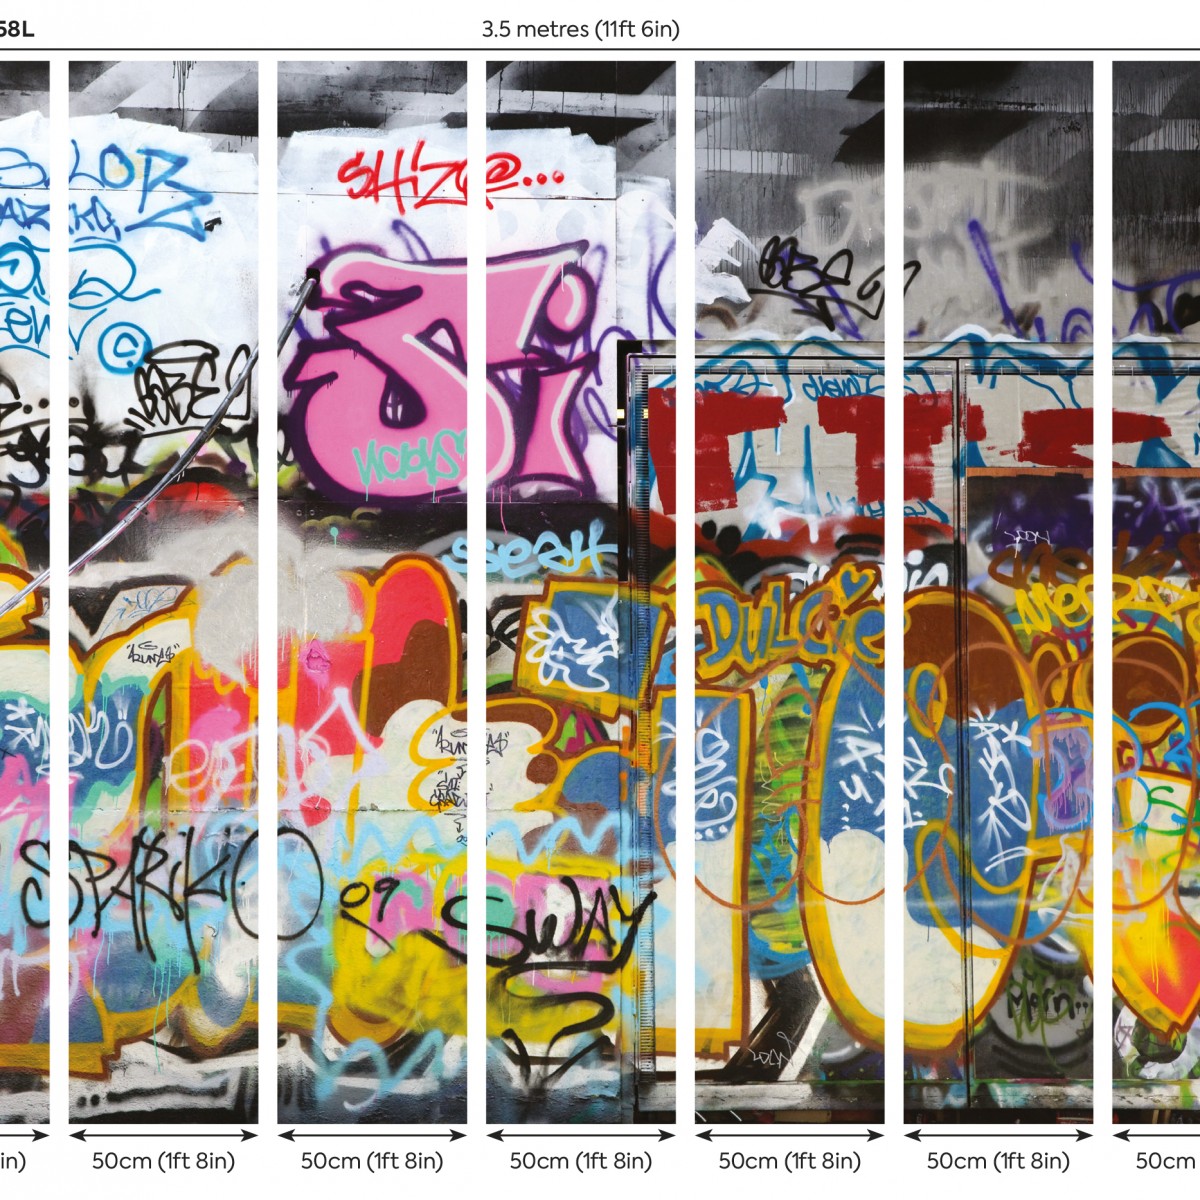 Fototapet Origin Murals ORM-MUR158L. Conține culorile: Violet, Violet Erica, Roșu, Roșu Rubin, Roz, Rose, Galben, Galben Zinc, Albastru, Albastru Noapte